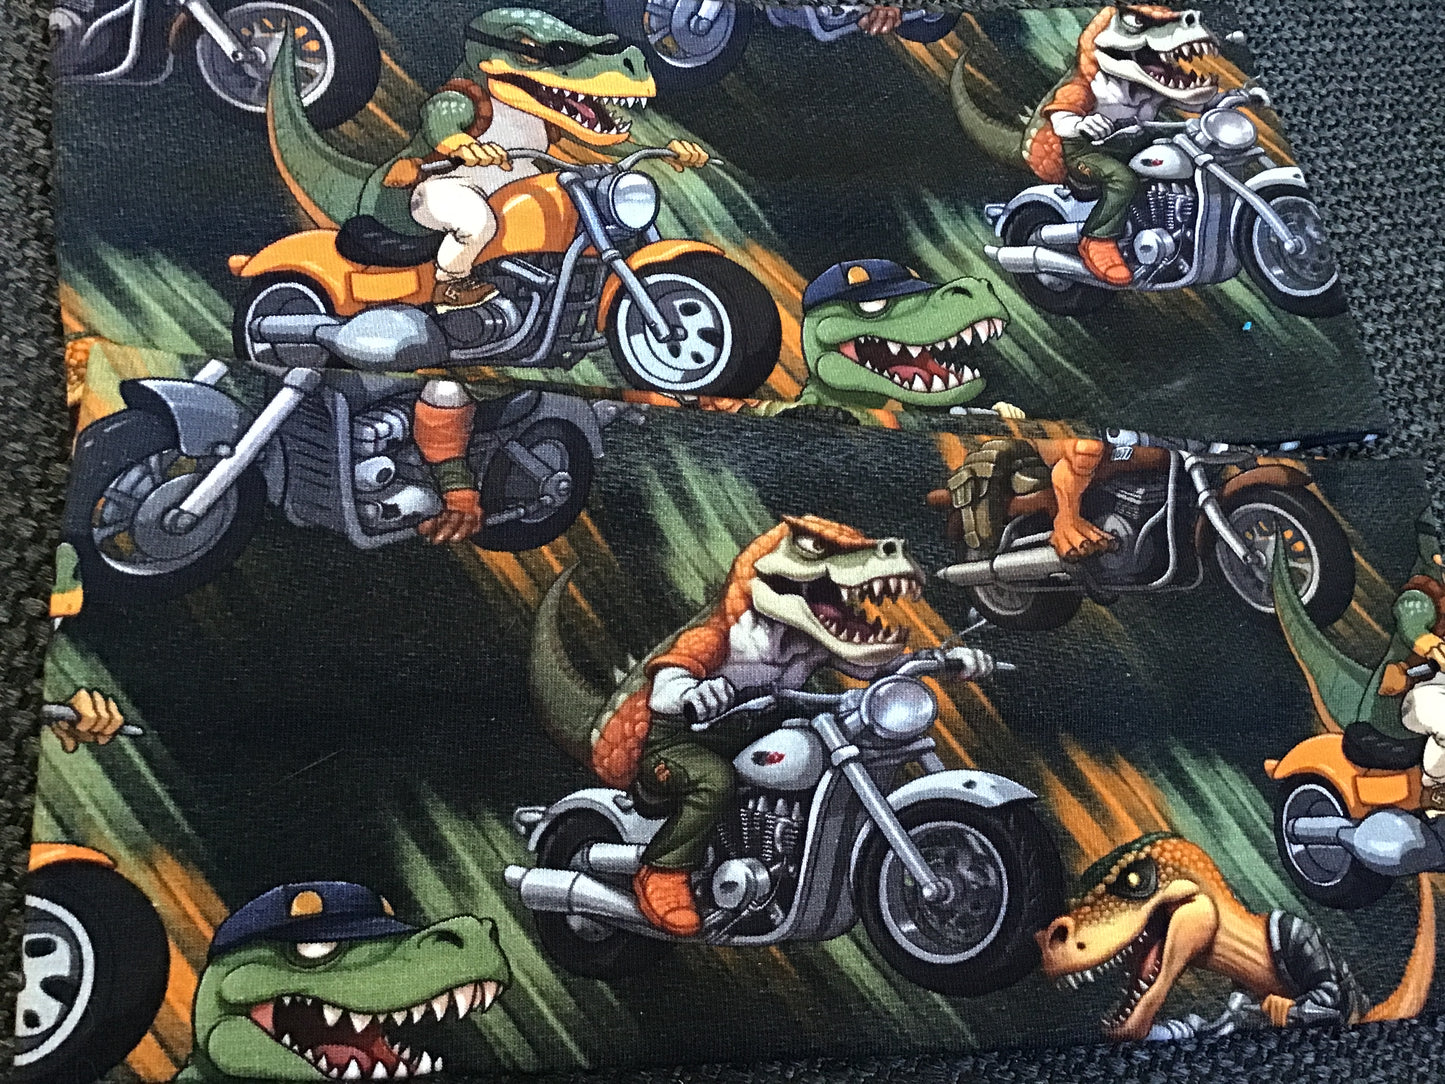 Pannebånd dinosaur på motorsykkel